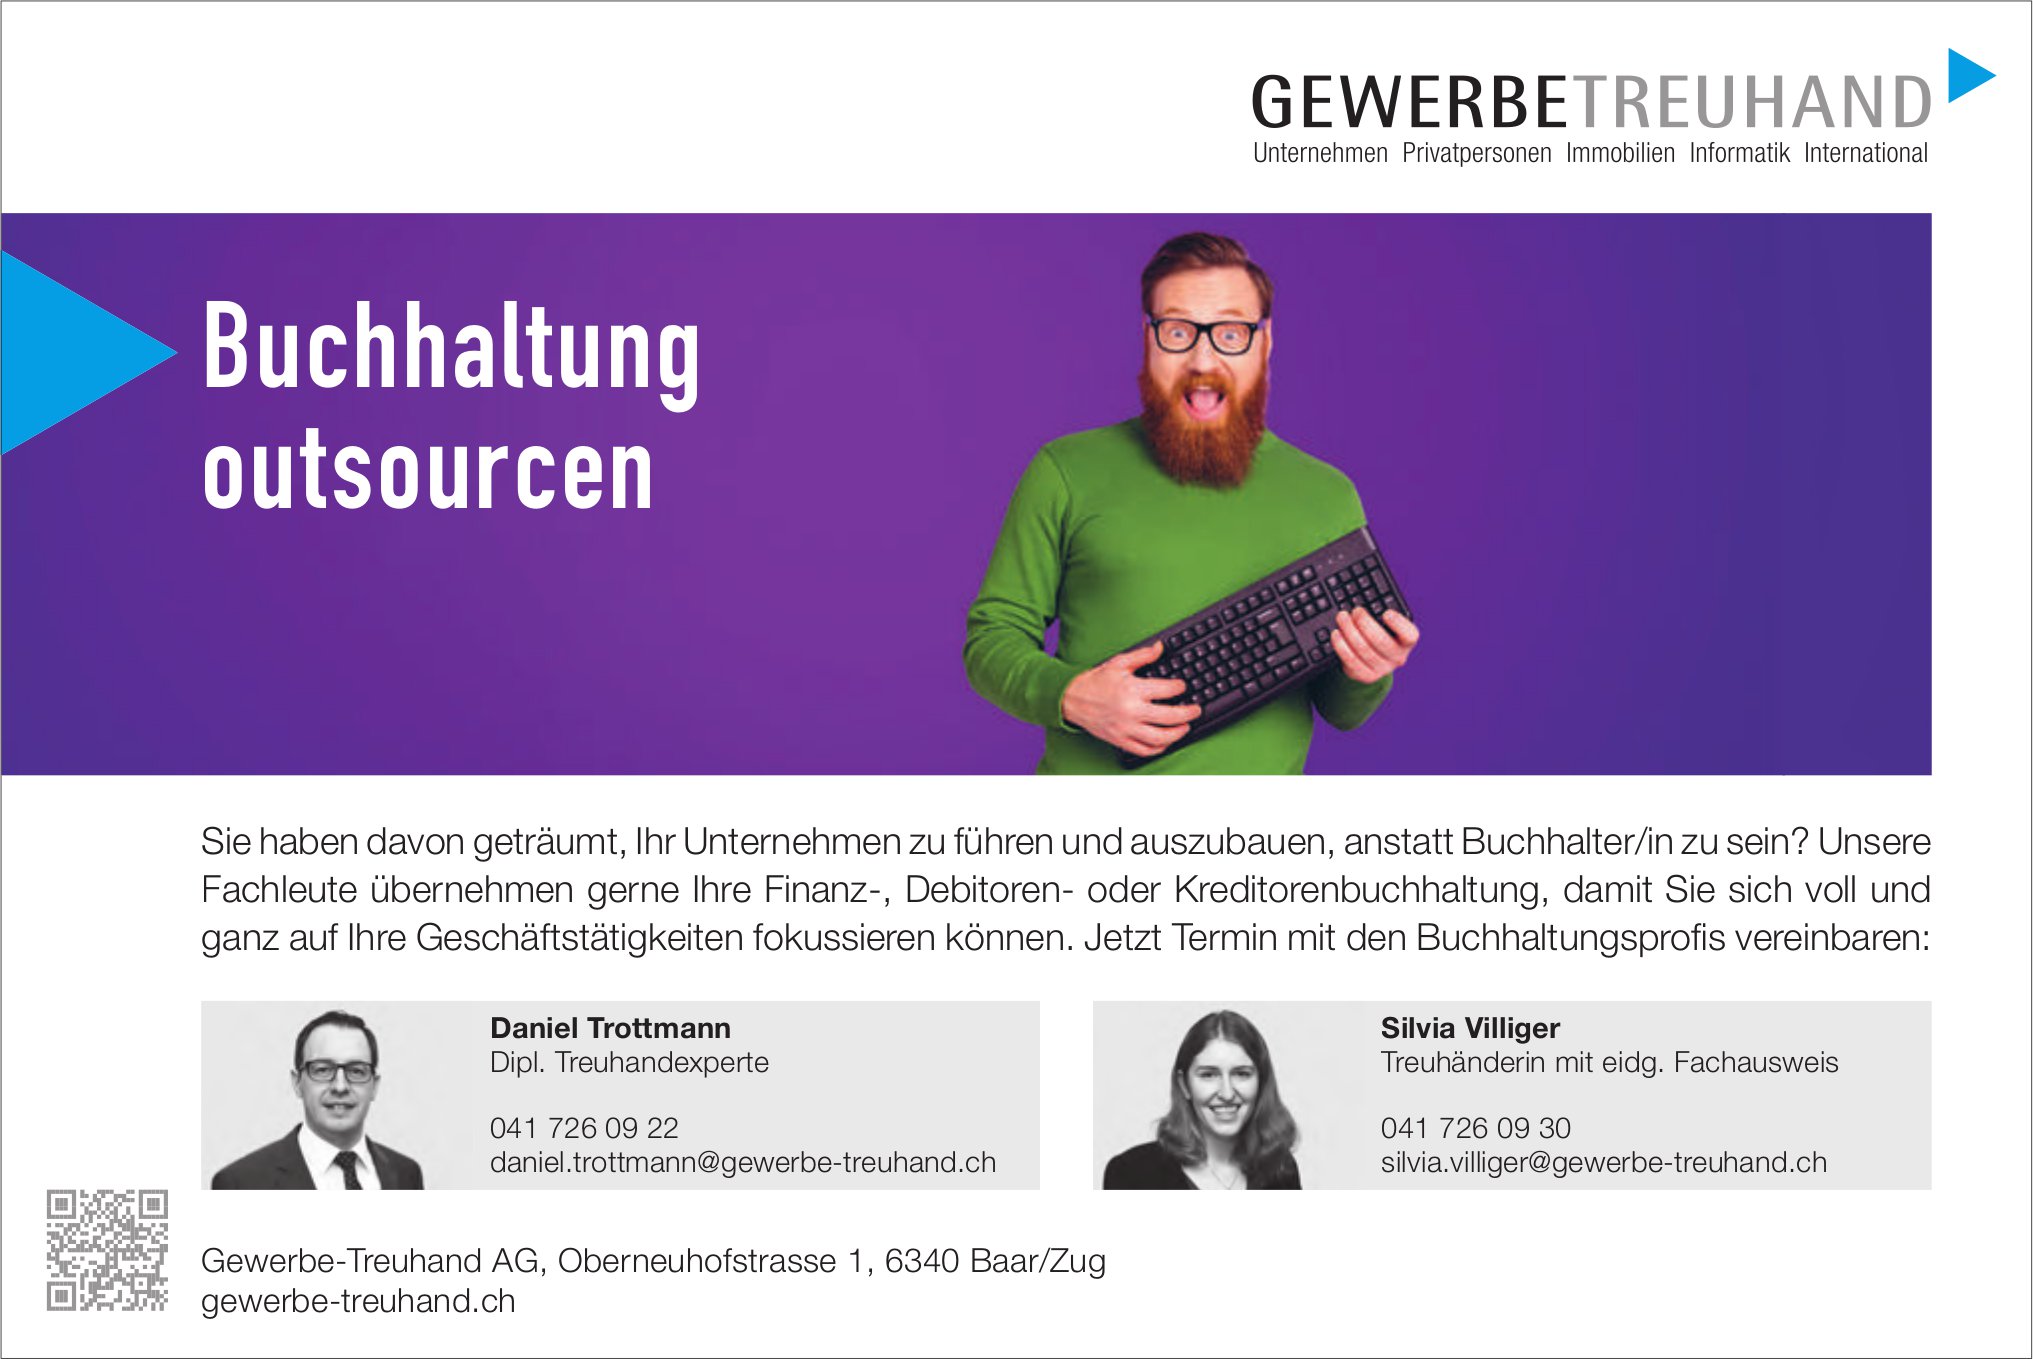 Gewerbe-Treuhand AG, Baar/Zug - Buchhaltung outsourcen